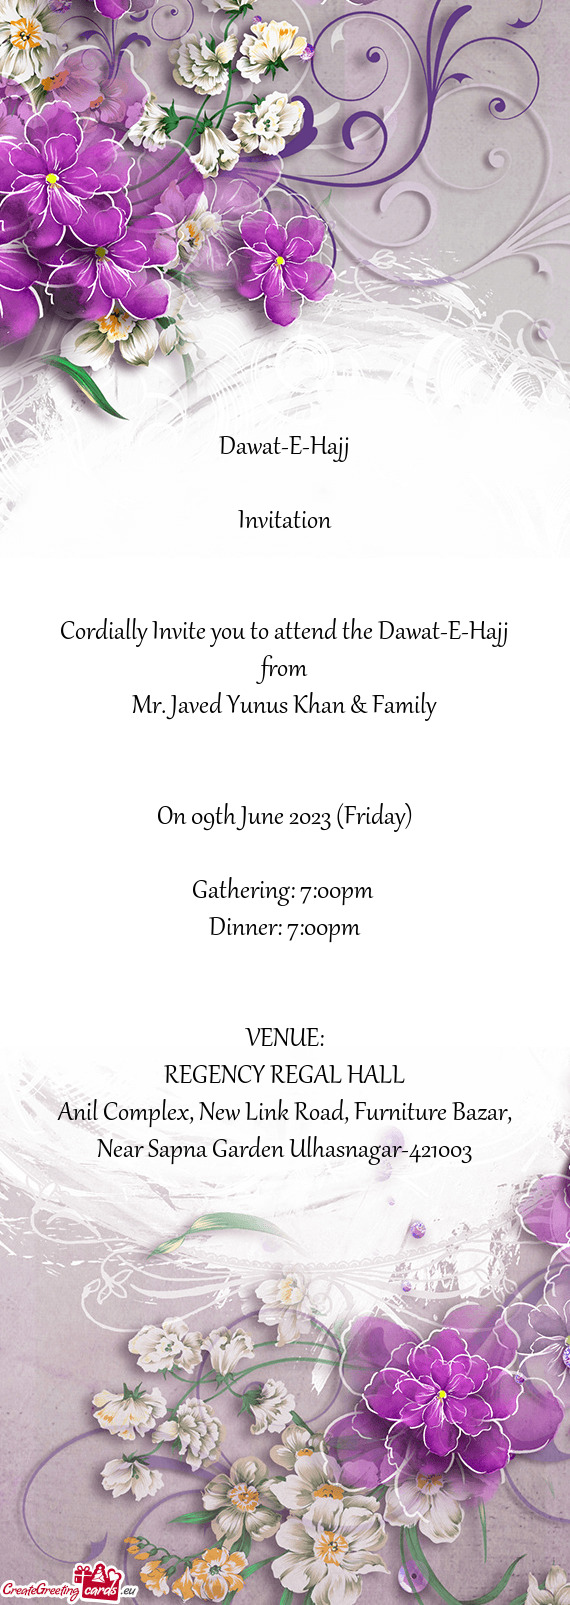 Mr. Javed Yunus Khan & Family